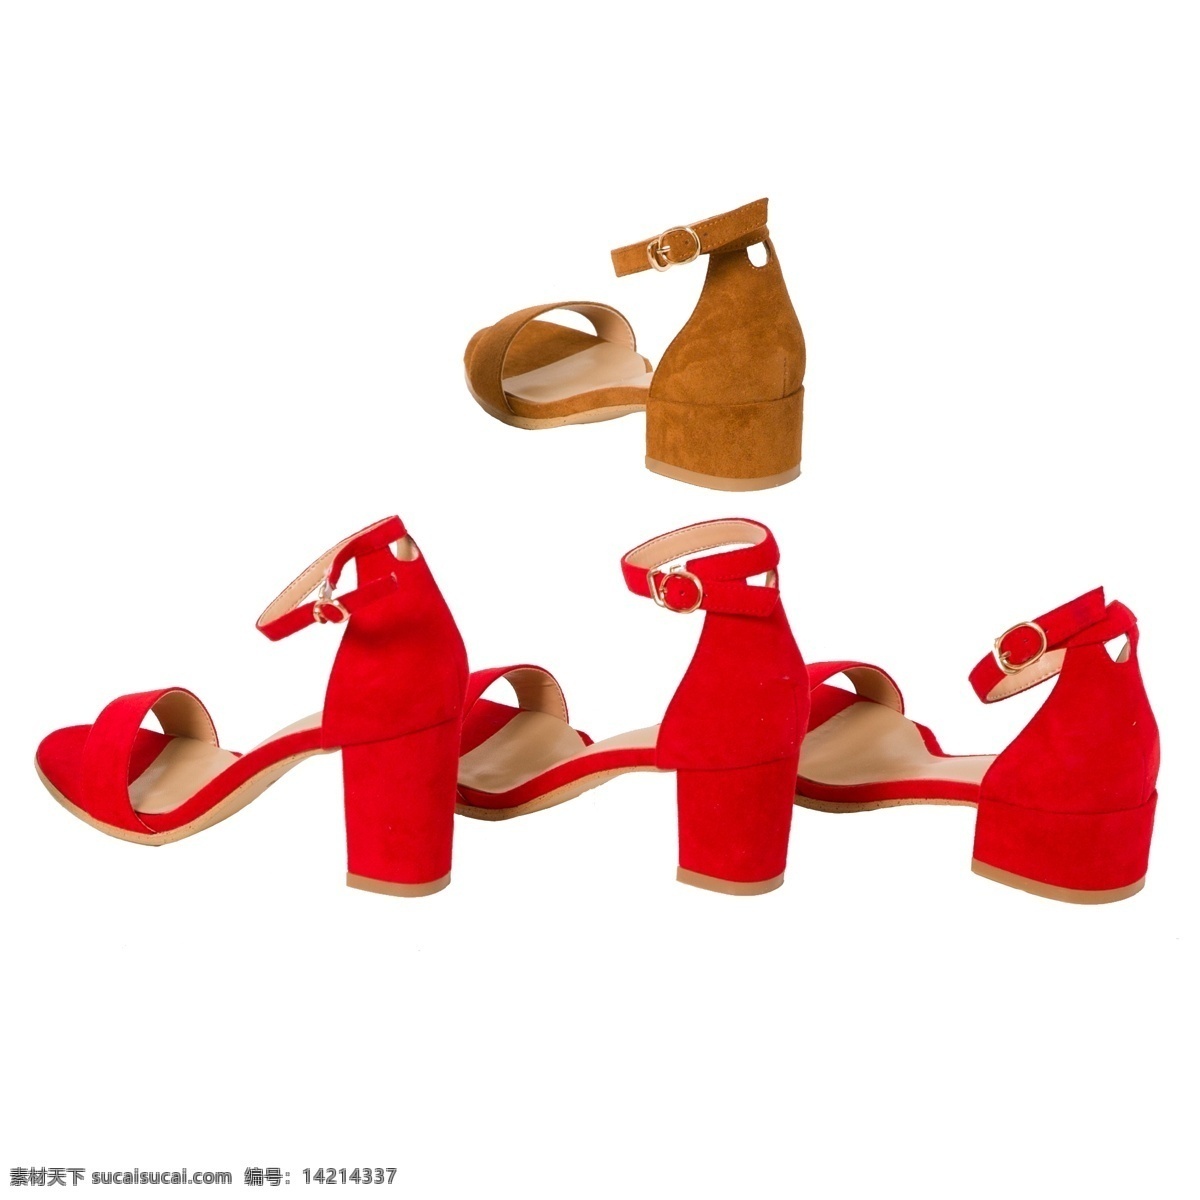 红色 夏季 时尚 凉鞋 穿鞋 夏季时尚凉鞋 鞋子 生活物品 生活用品 日常生活用品 生活日用